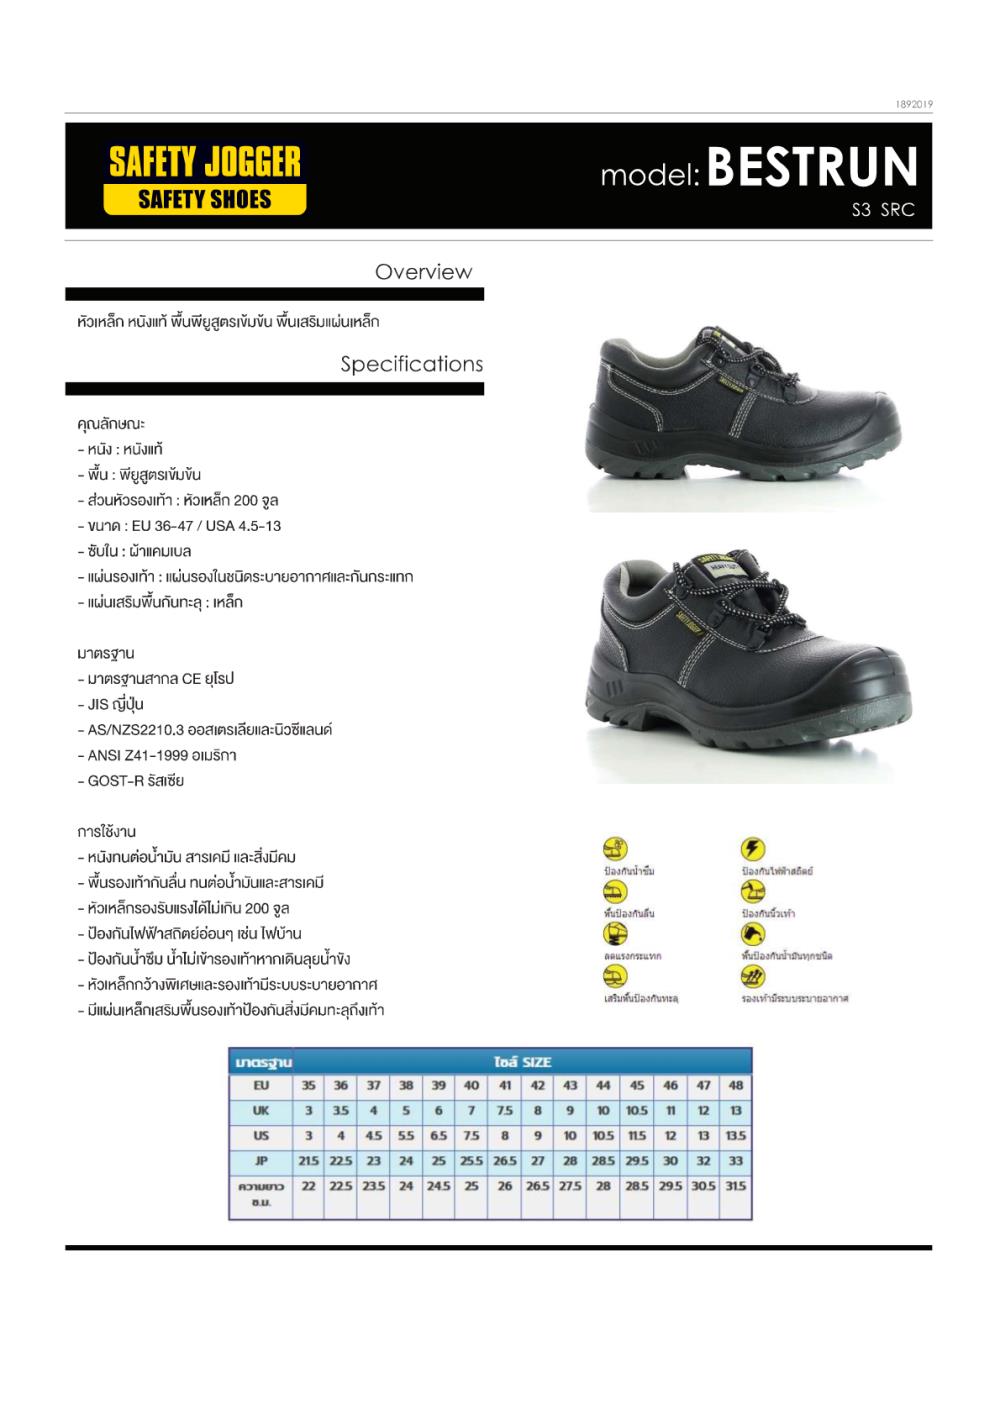 รองเท้าเซฟตี้,รองเท้าเซฟตี้ รองเท้านิรภัย รองเท้าหัวเหล็ก อุปกรณ์เซฟตี้ อุปกรณ์PPE,Safety Jogger,Electrical and Power Generation/Safety Equipment